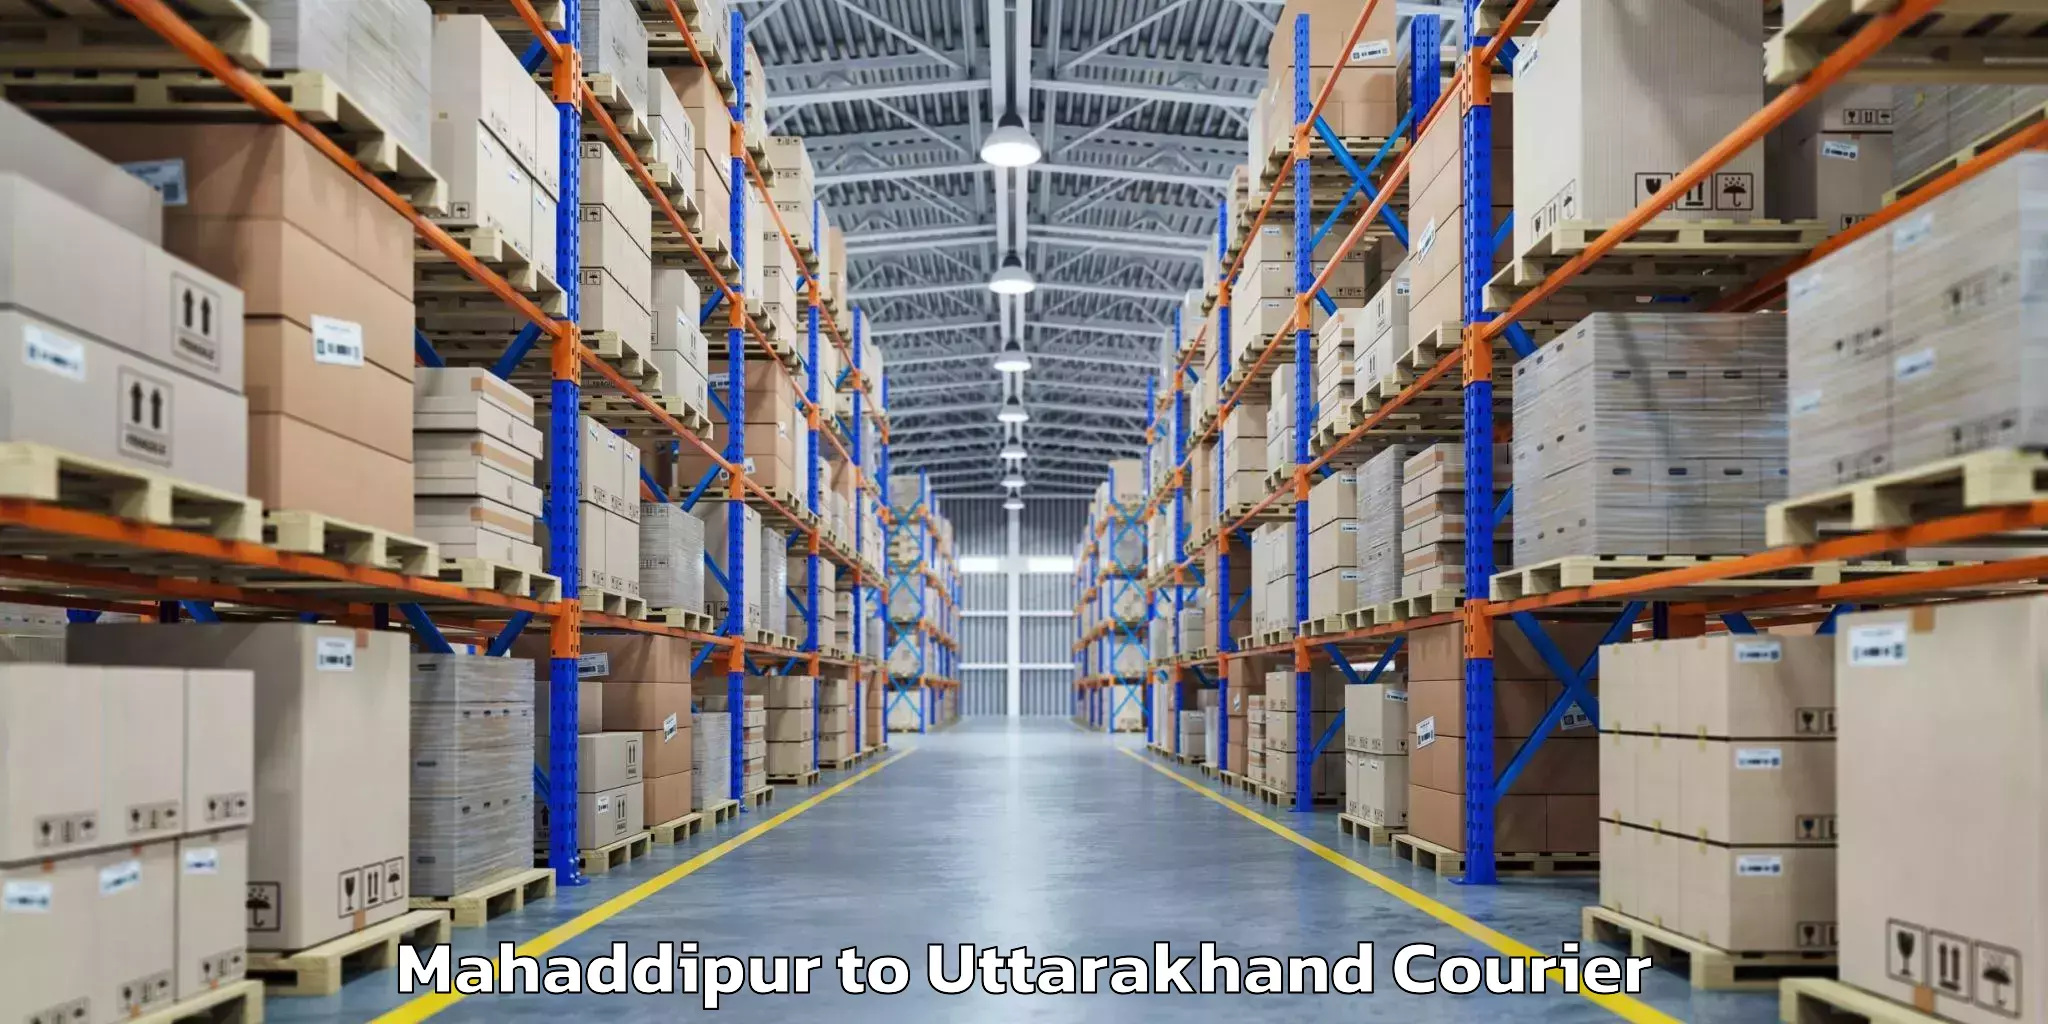 Baggage courier guide Mahaddipur to Uttarakhand